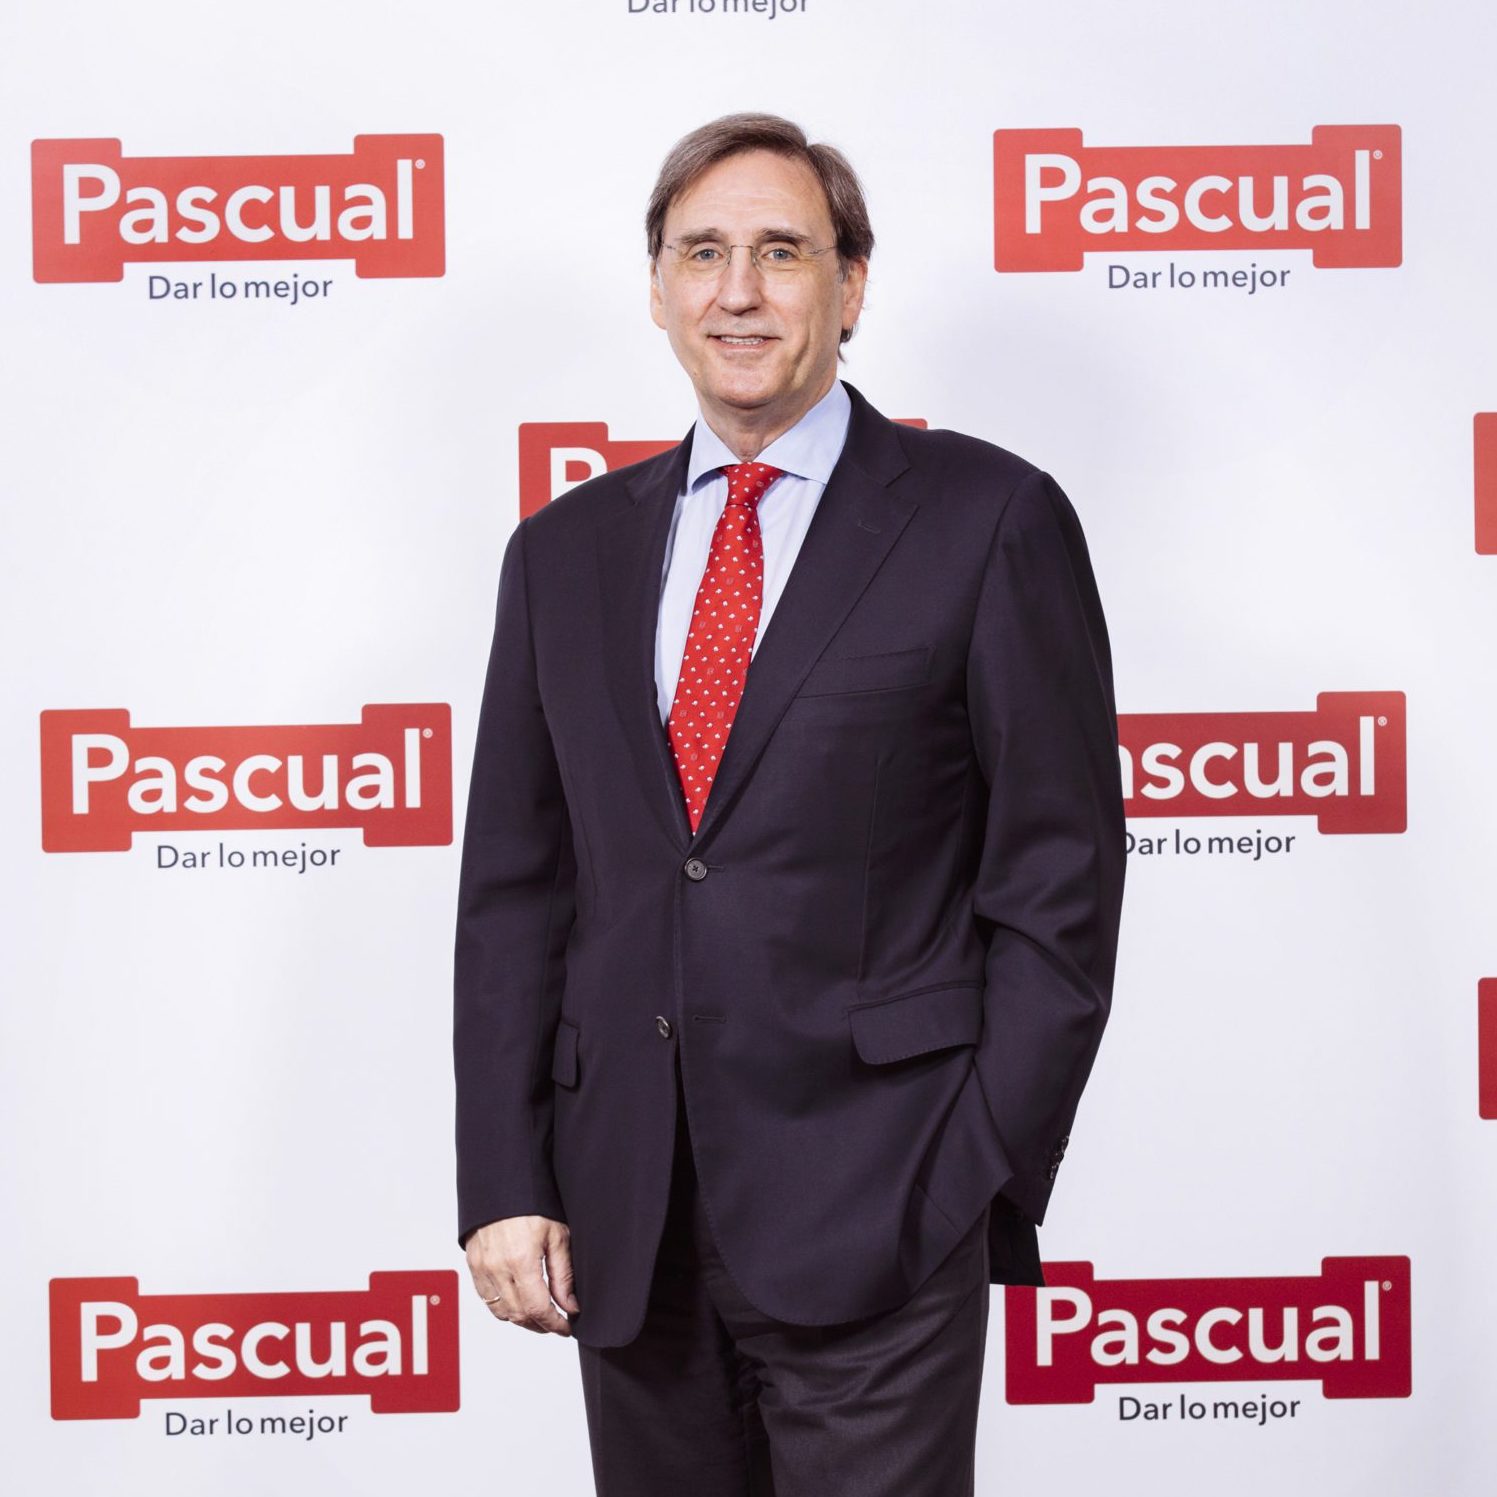 Tomás Pascual Gomez-Cuétara